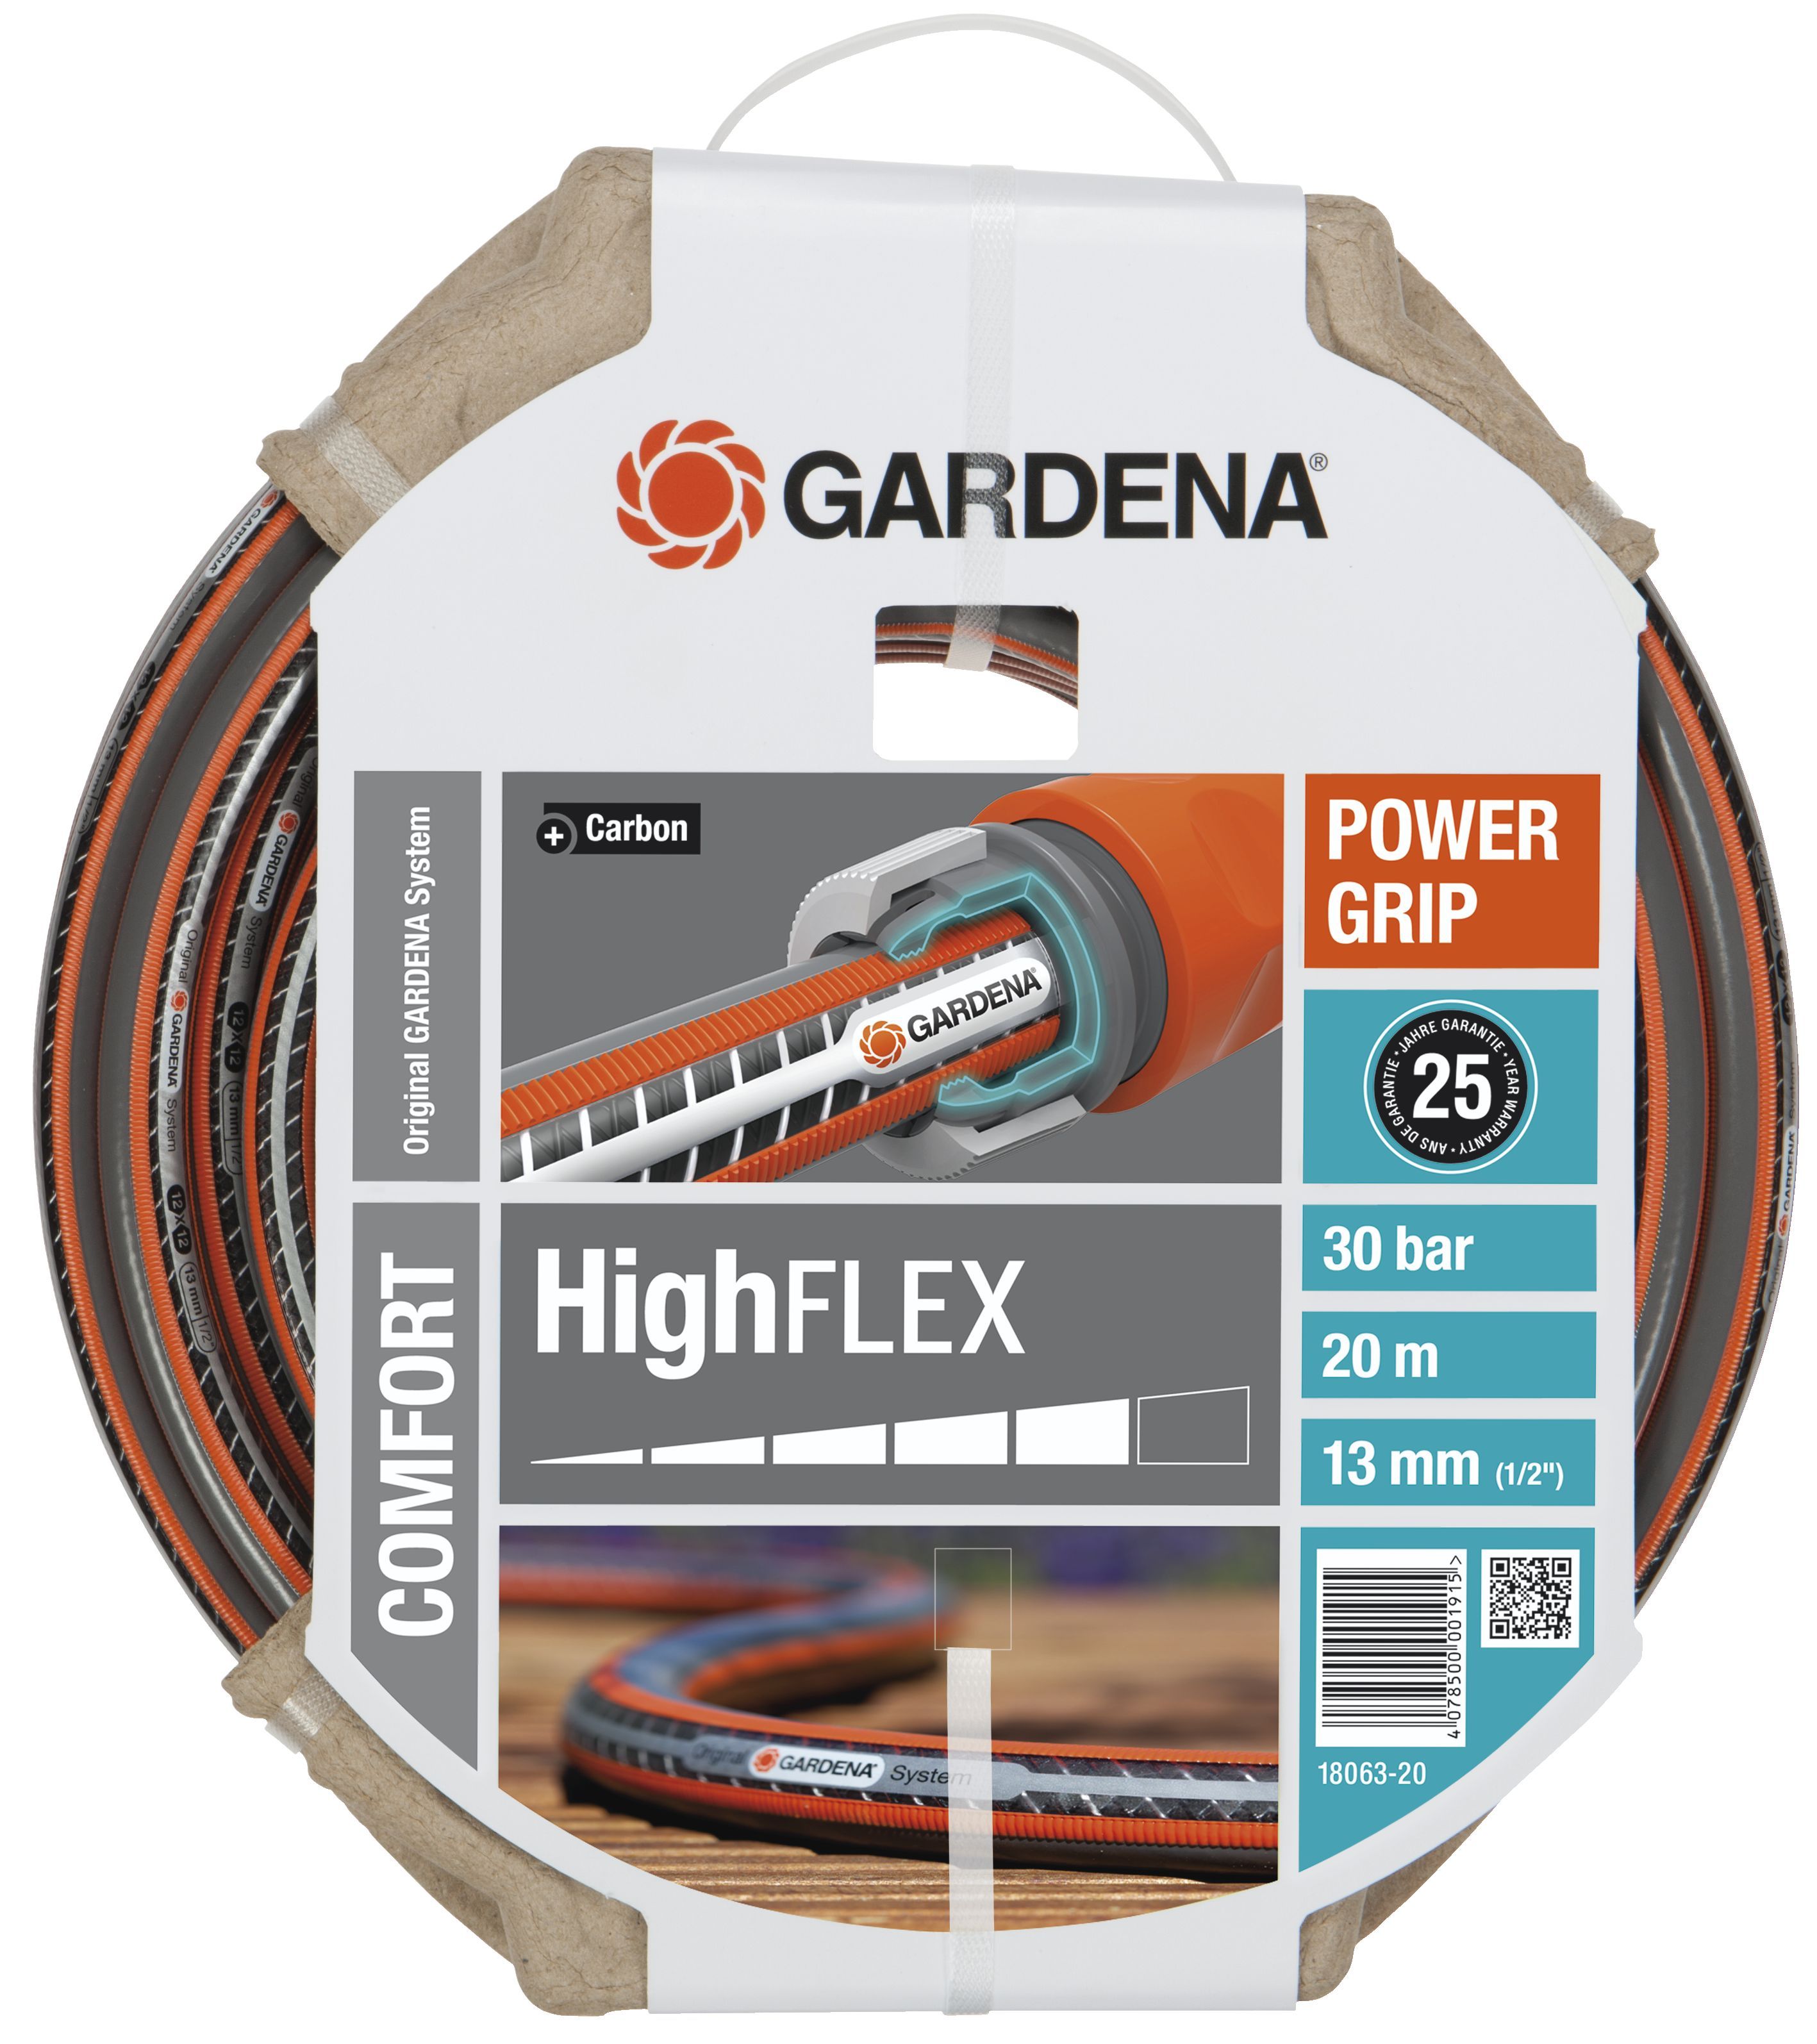 Gardena HighFLEX Comfort, 13mm (1/2") 20m (18063-20)